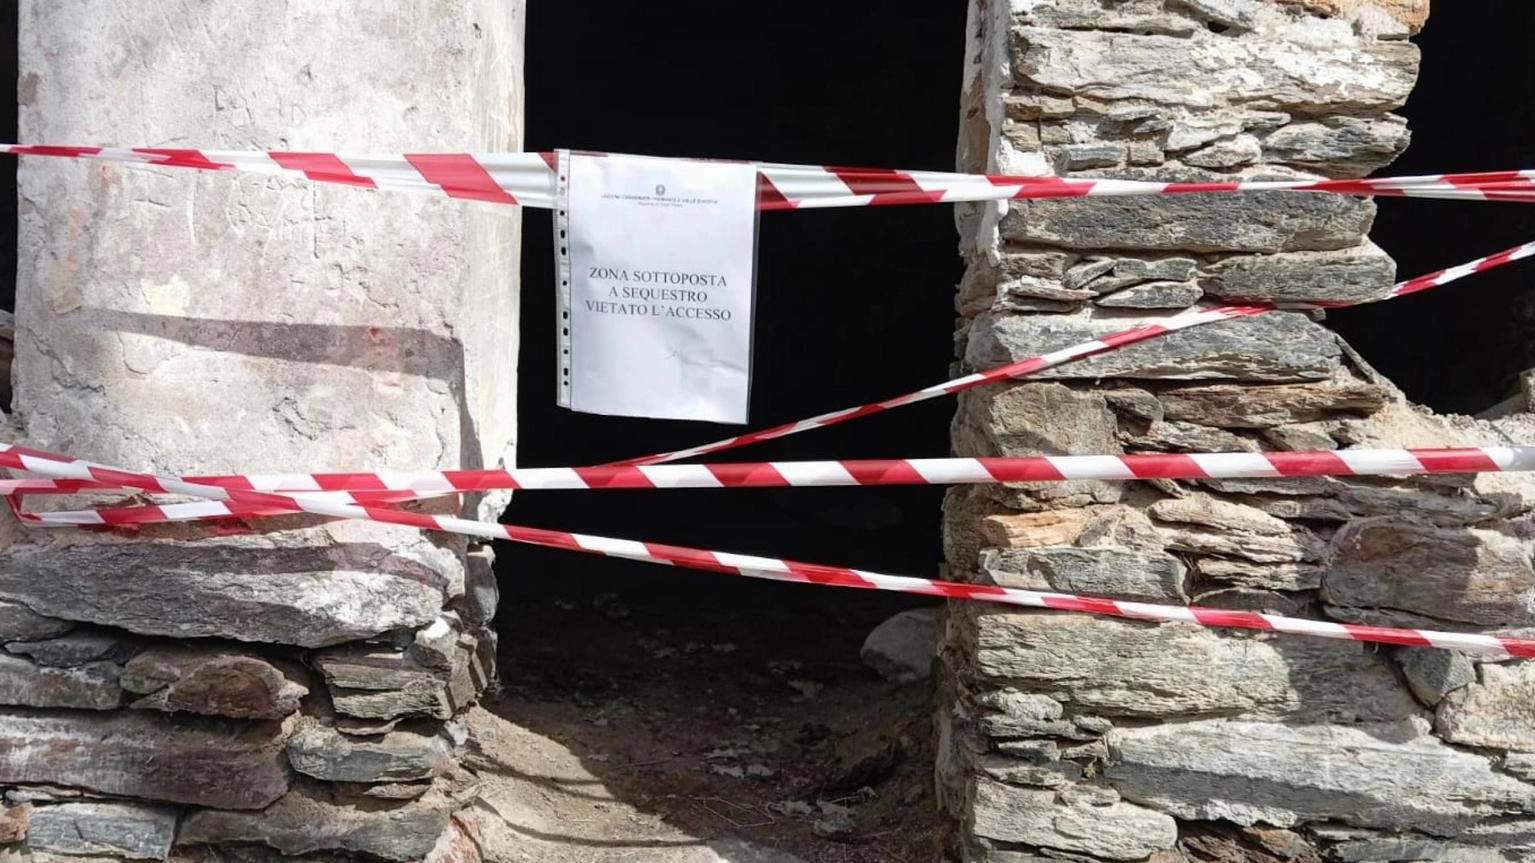 Femminicidio Aosta: l'arrestato "respinge ogni accusa"